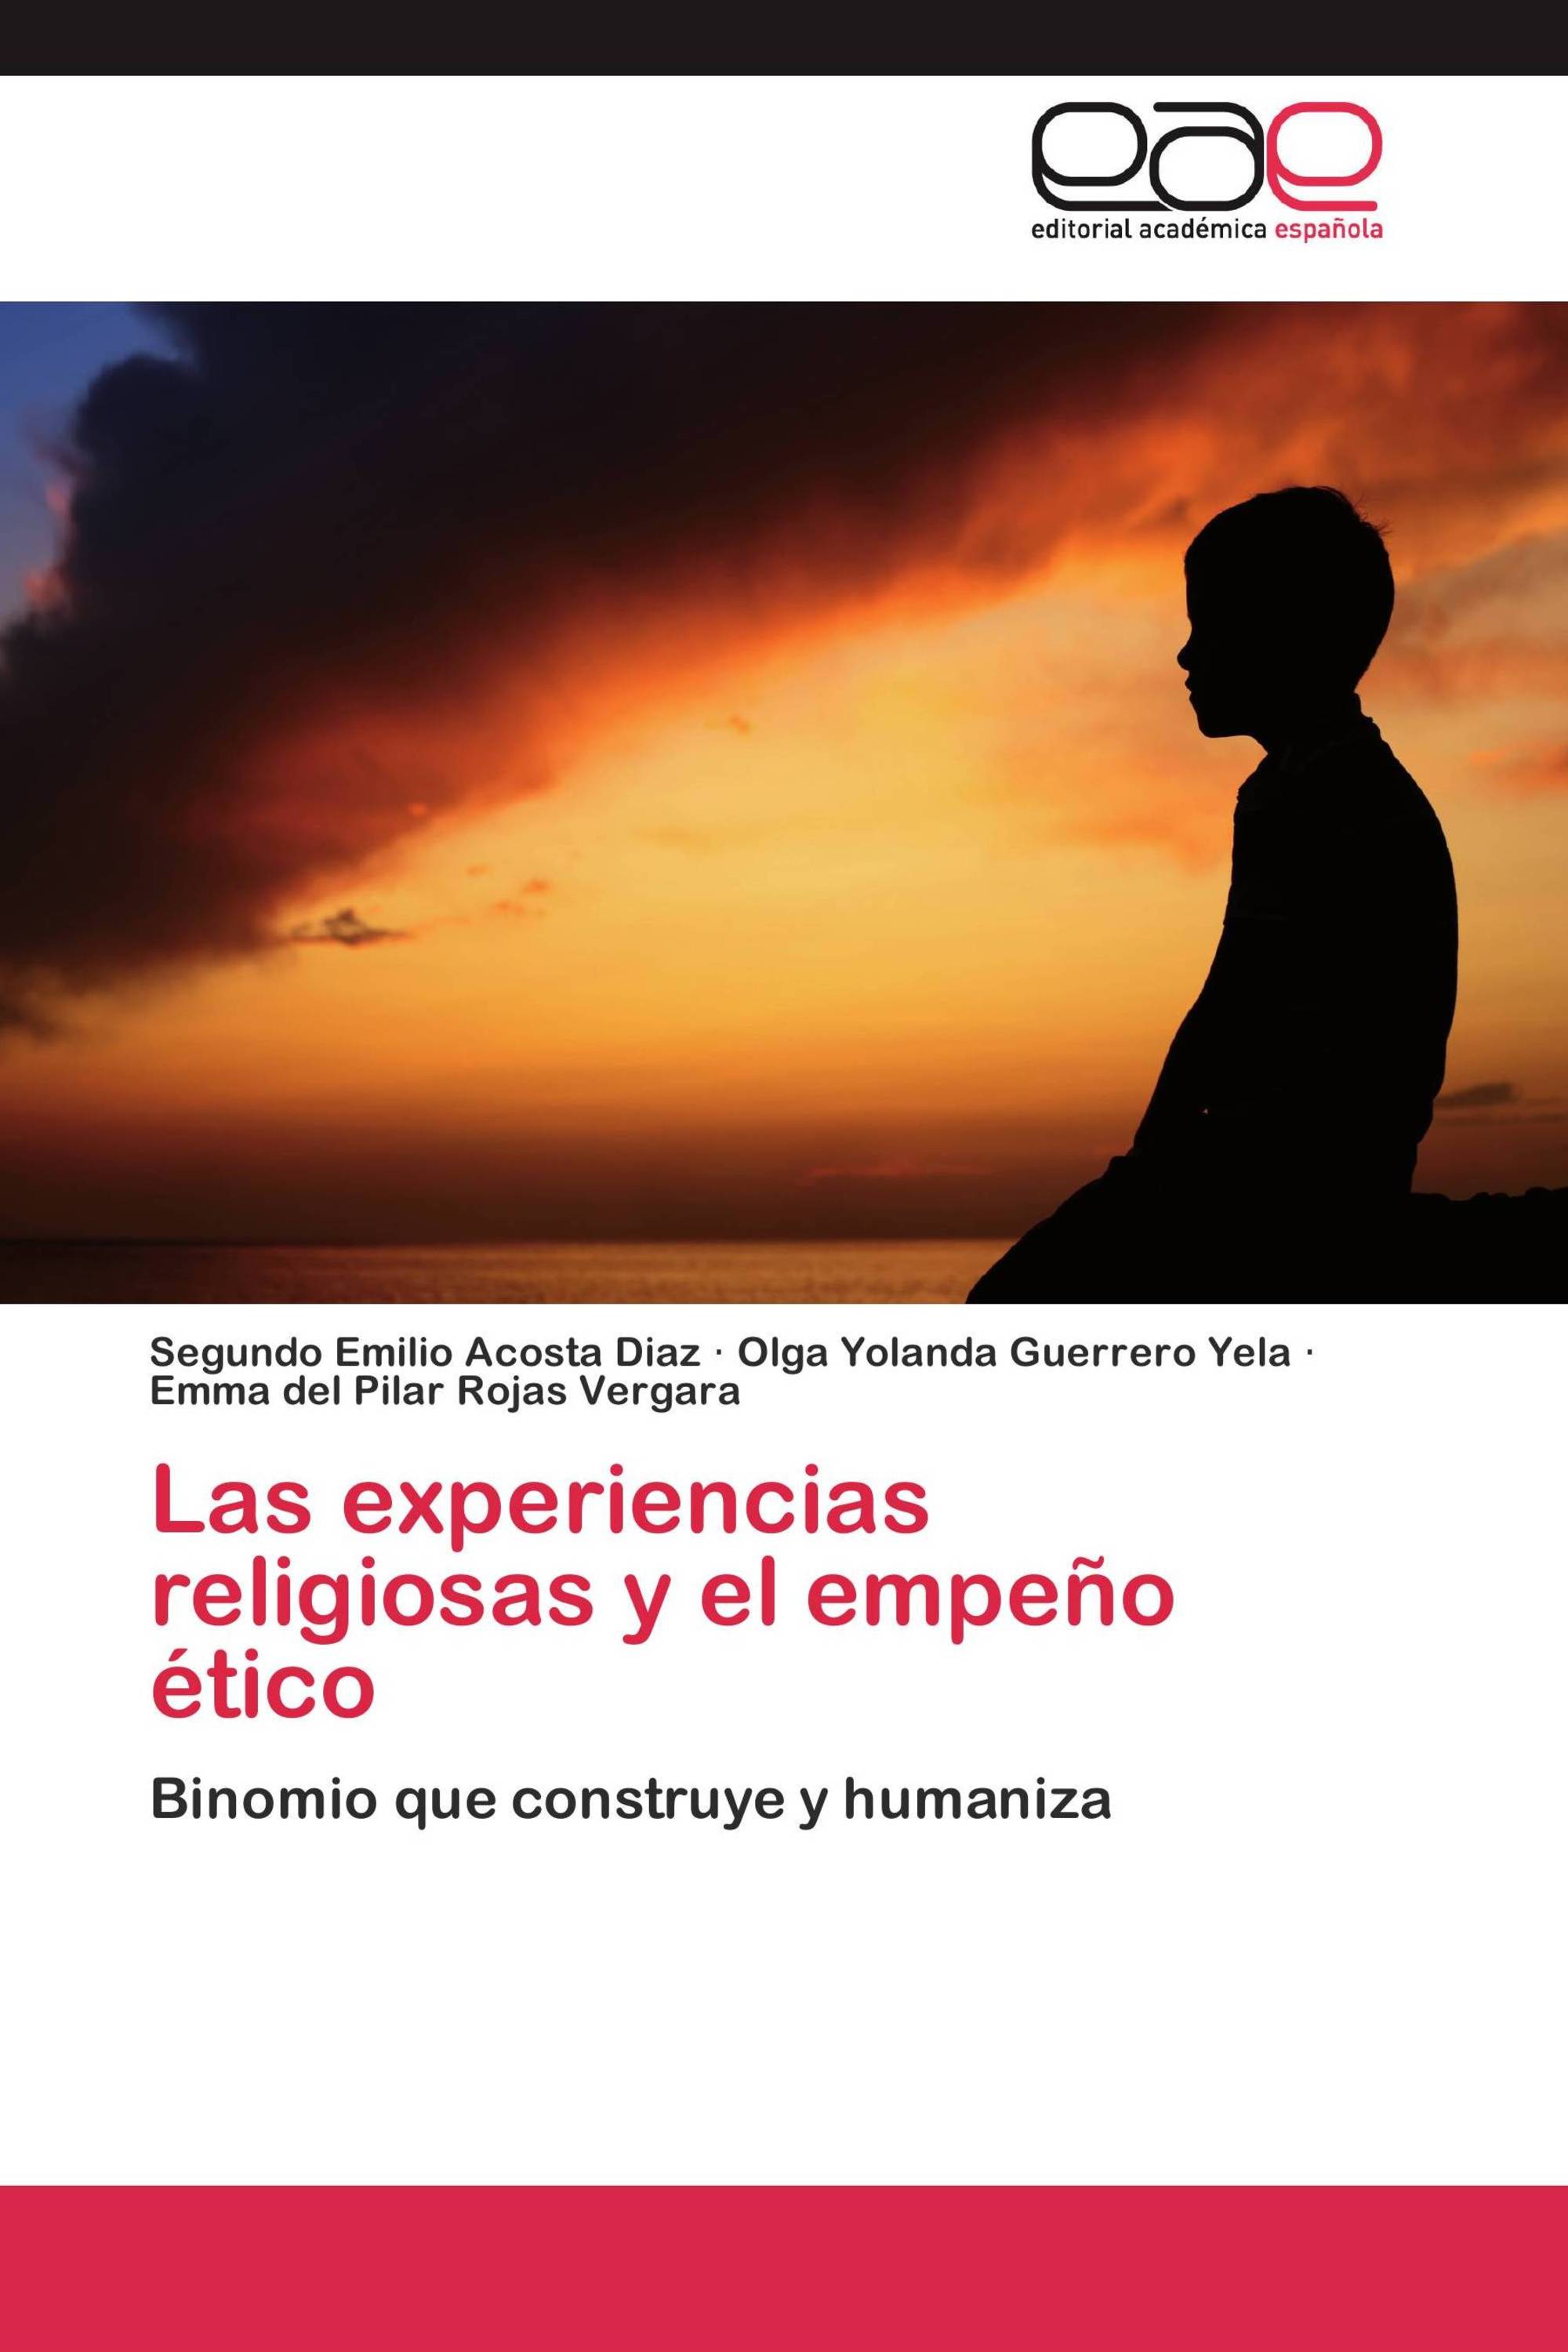 Las experiencias religiosas y el empeño ético